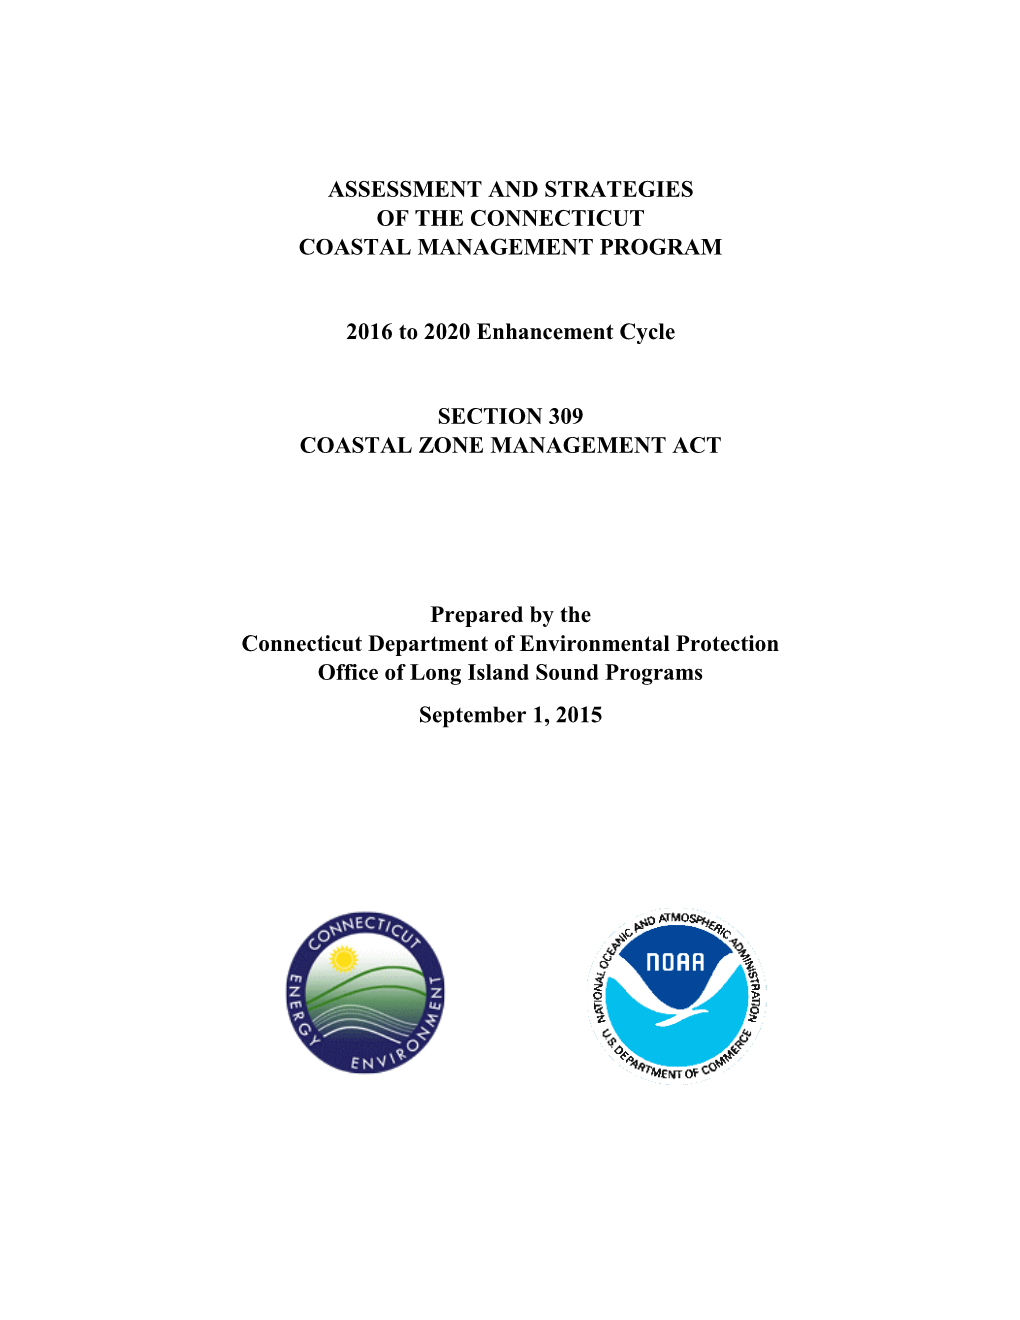 Connecticut Coastal Management Program